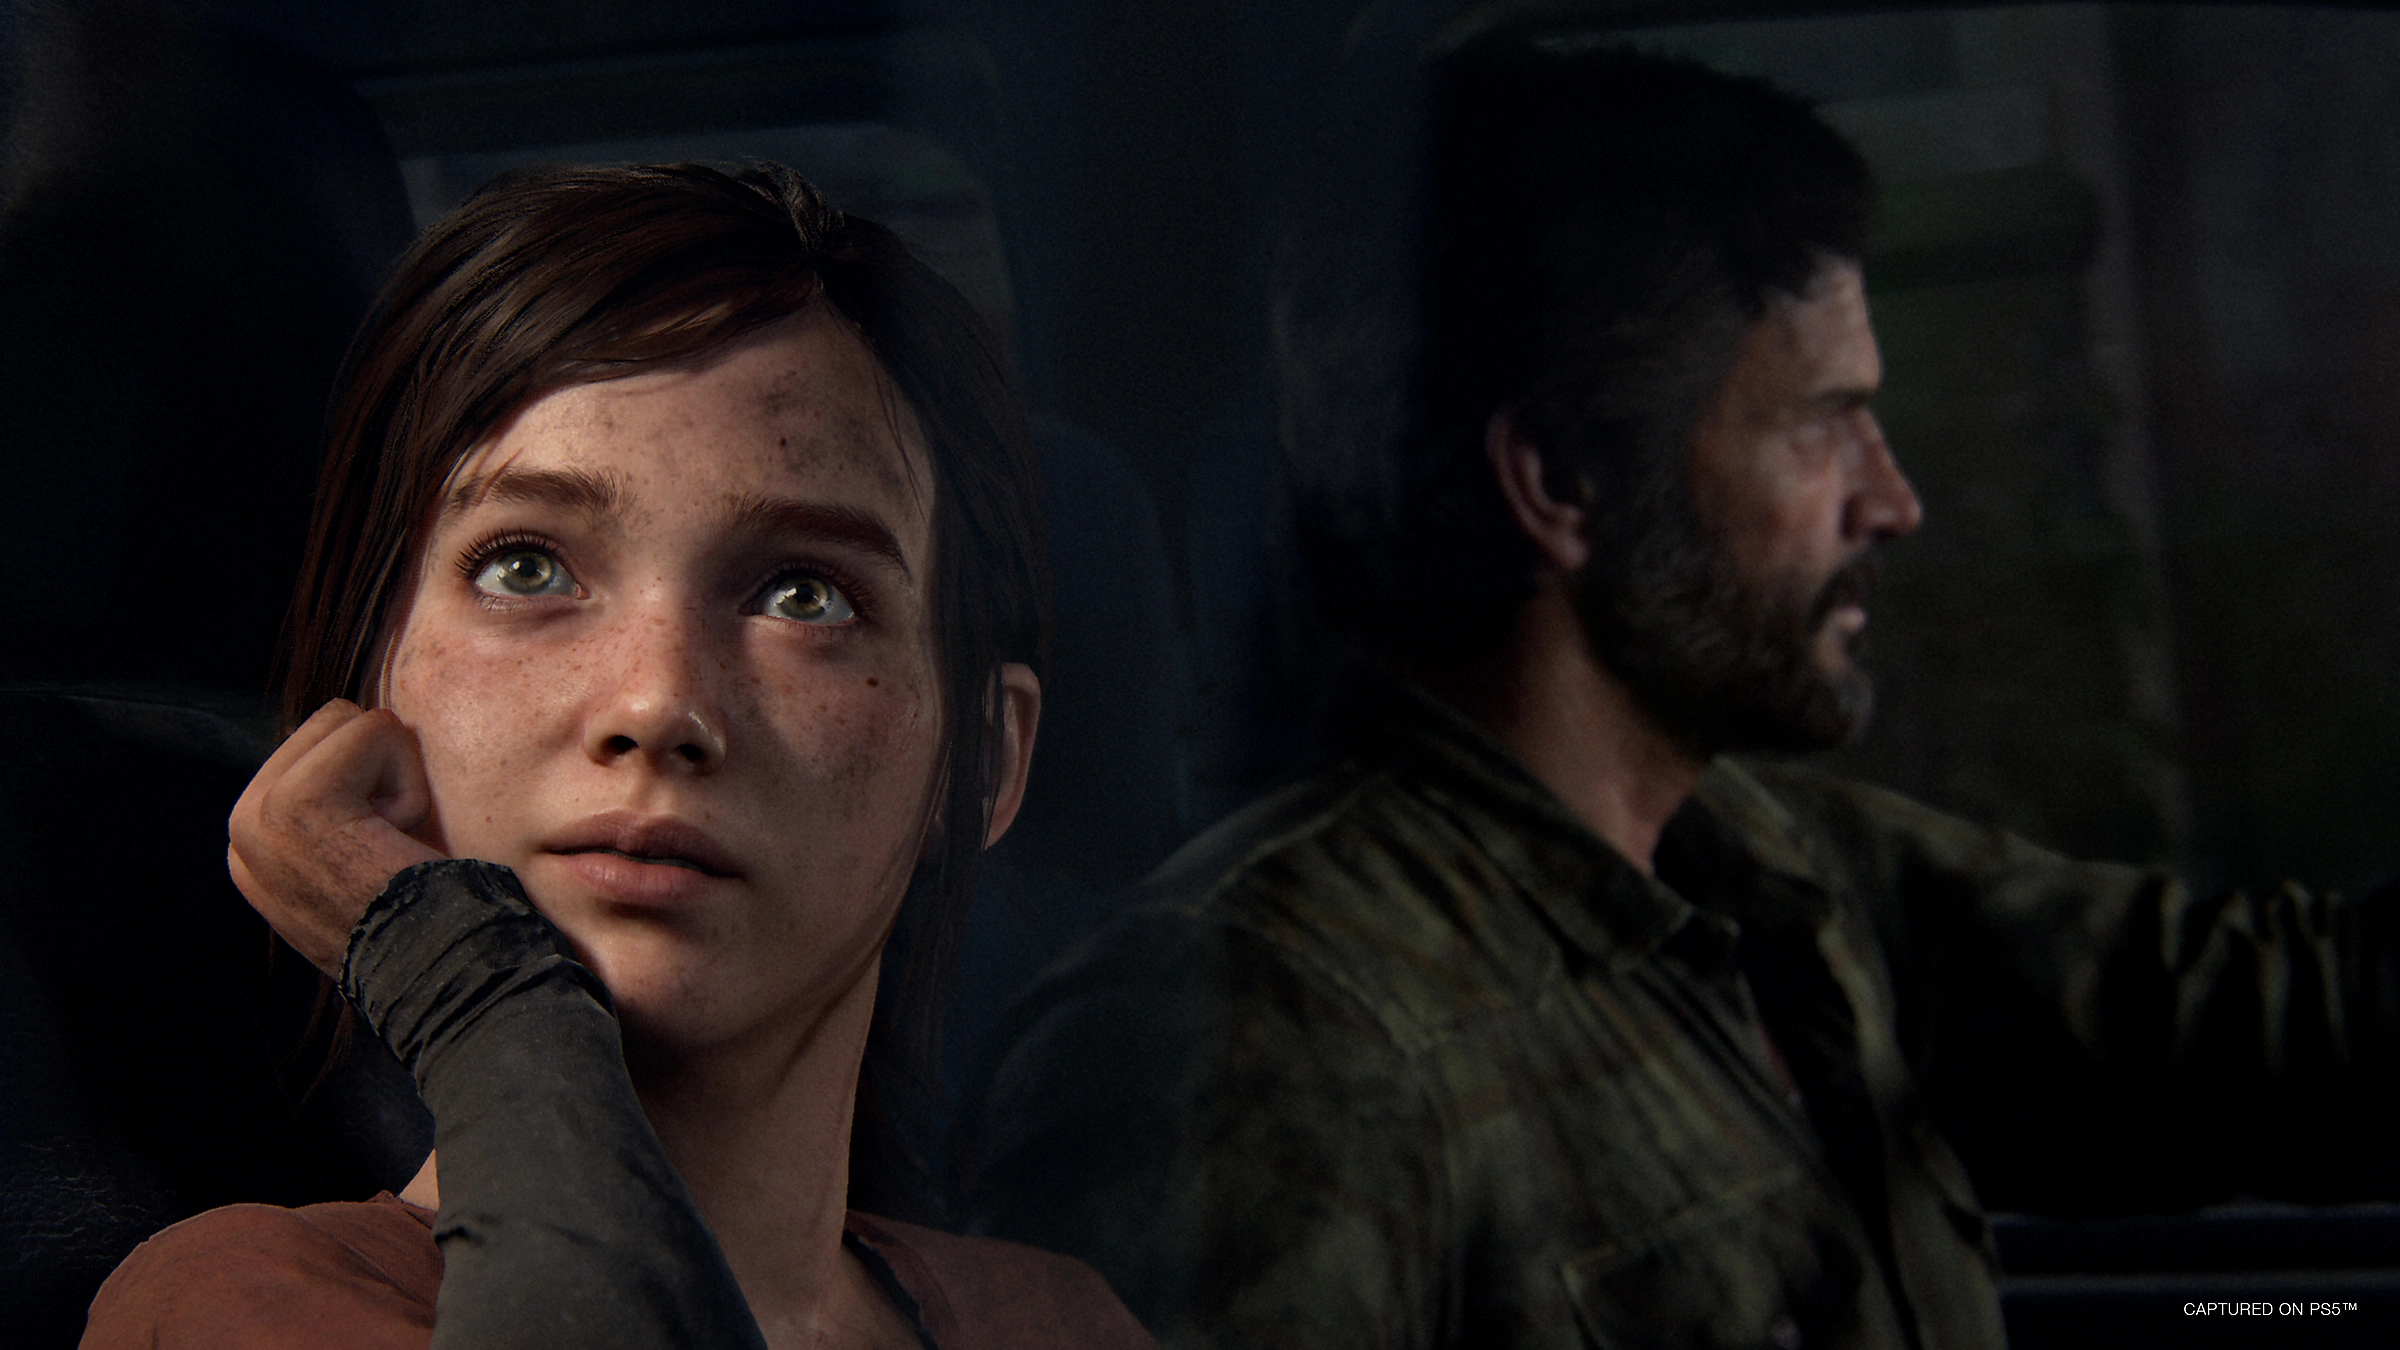 картинка игры The Last of Us Part I